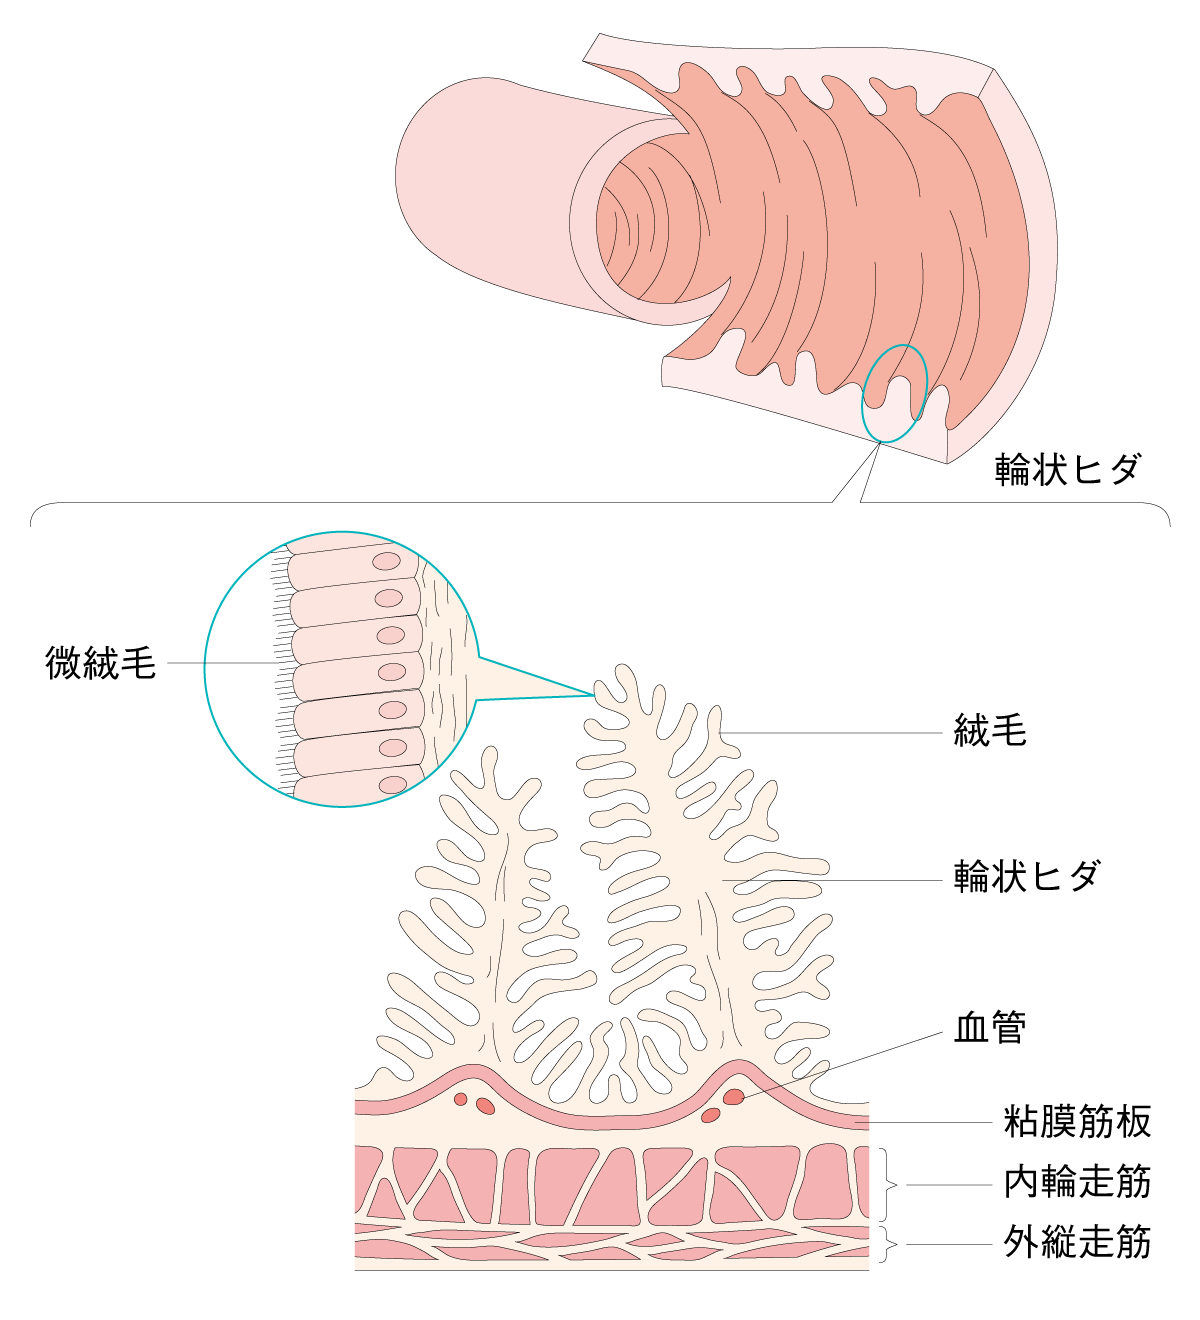 図2 小腸の拡大図